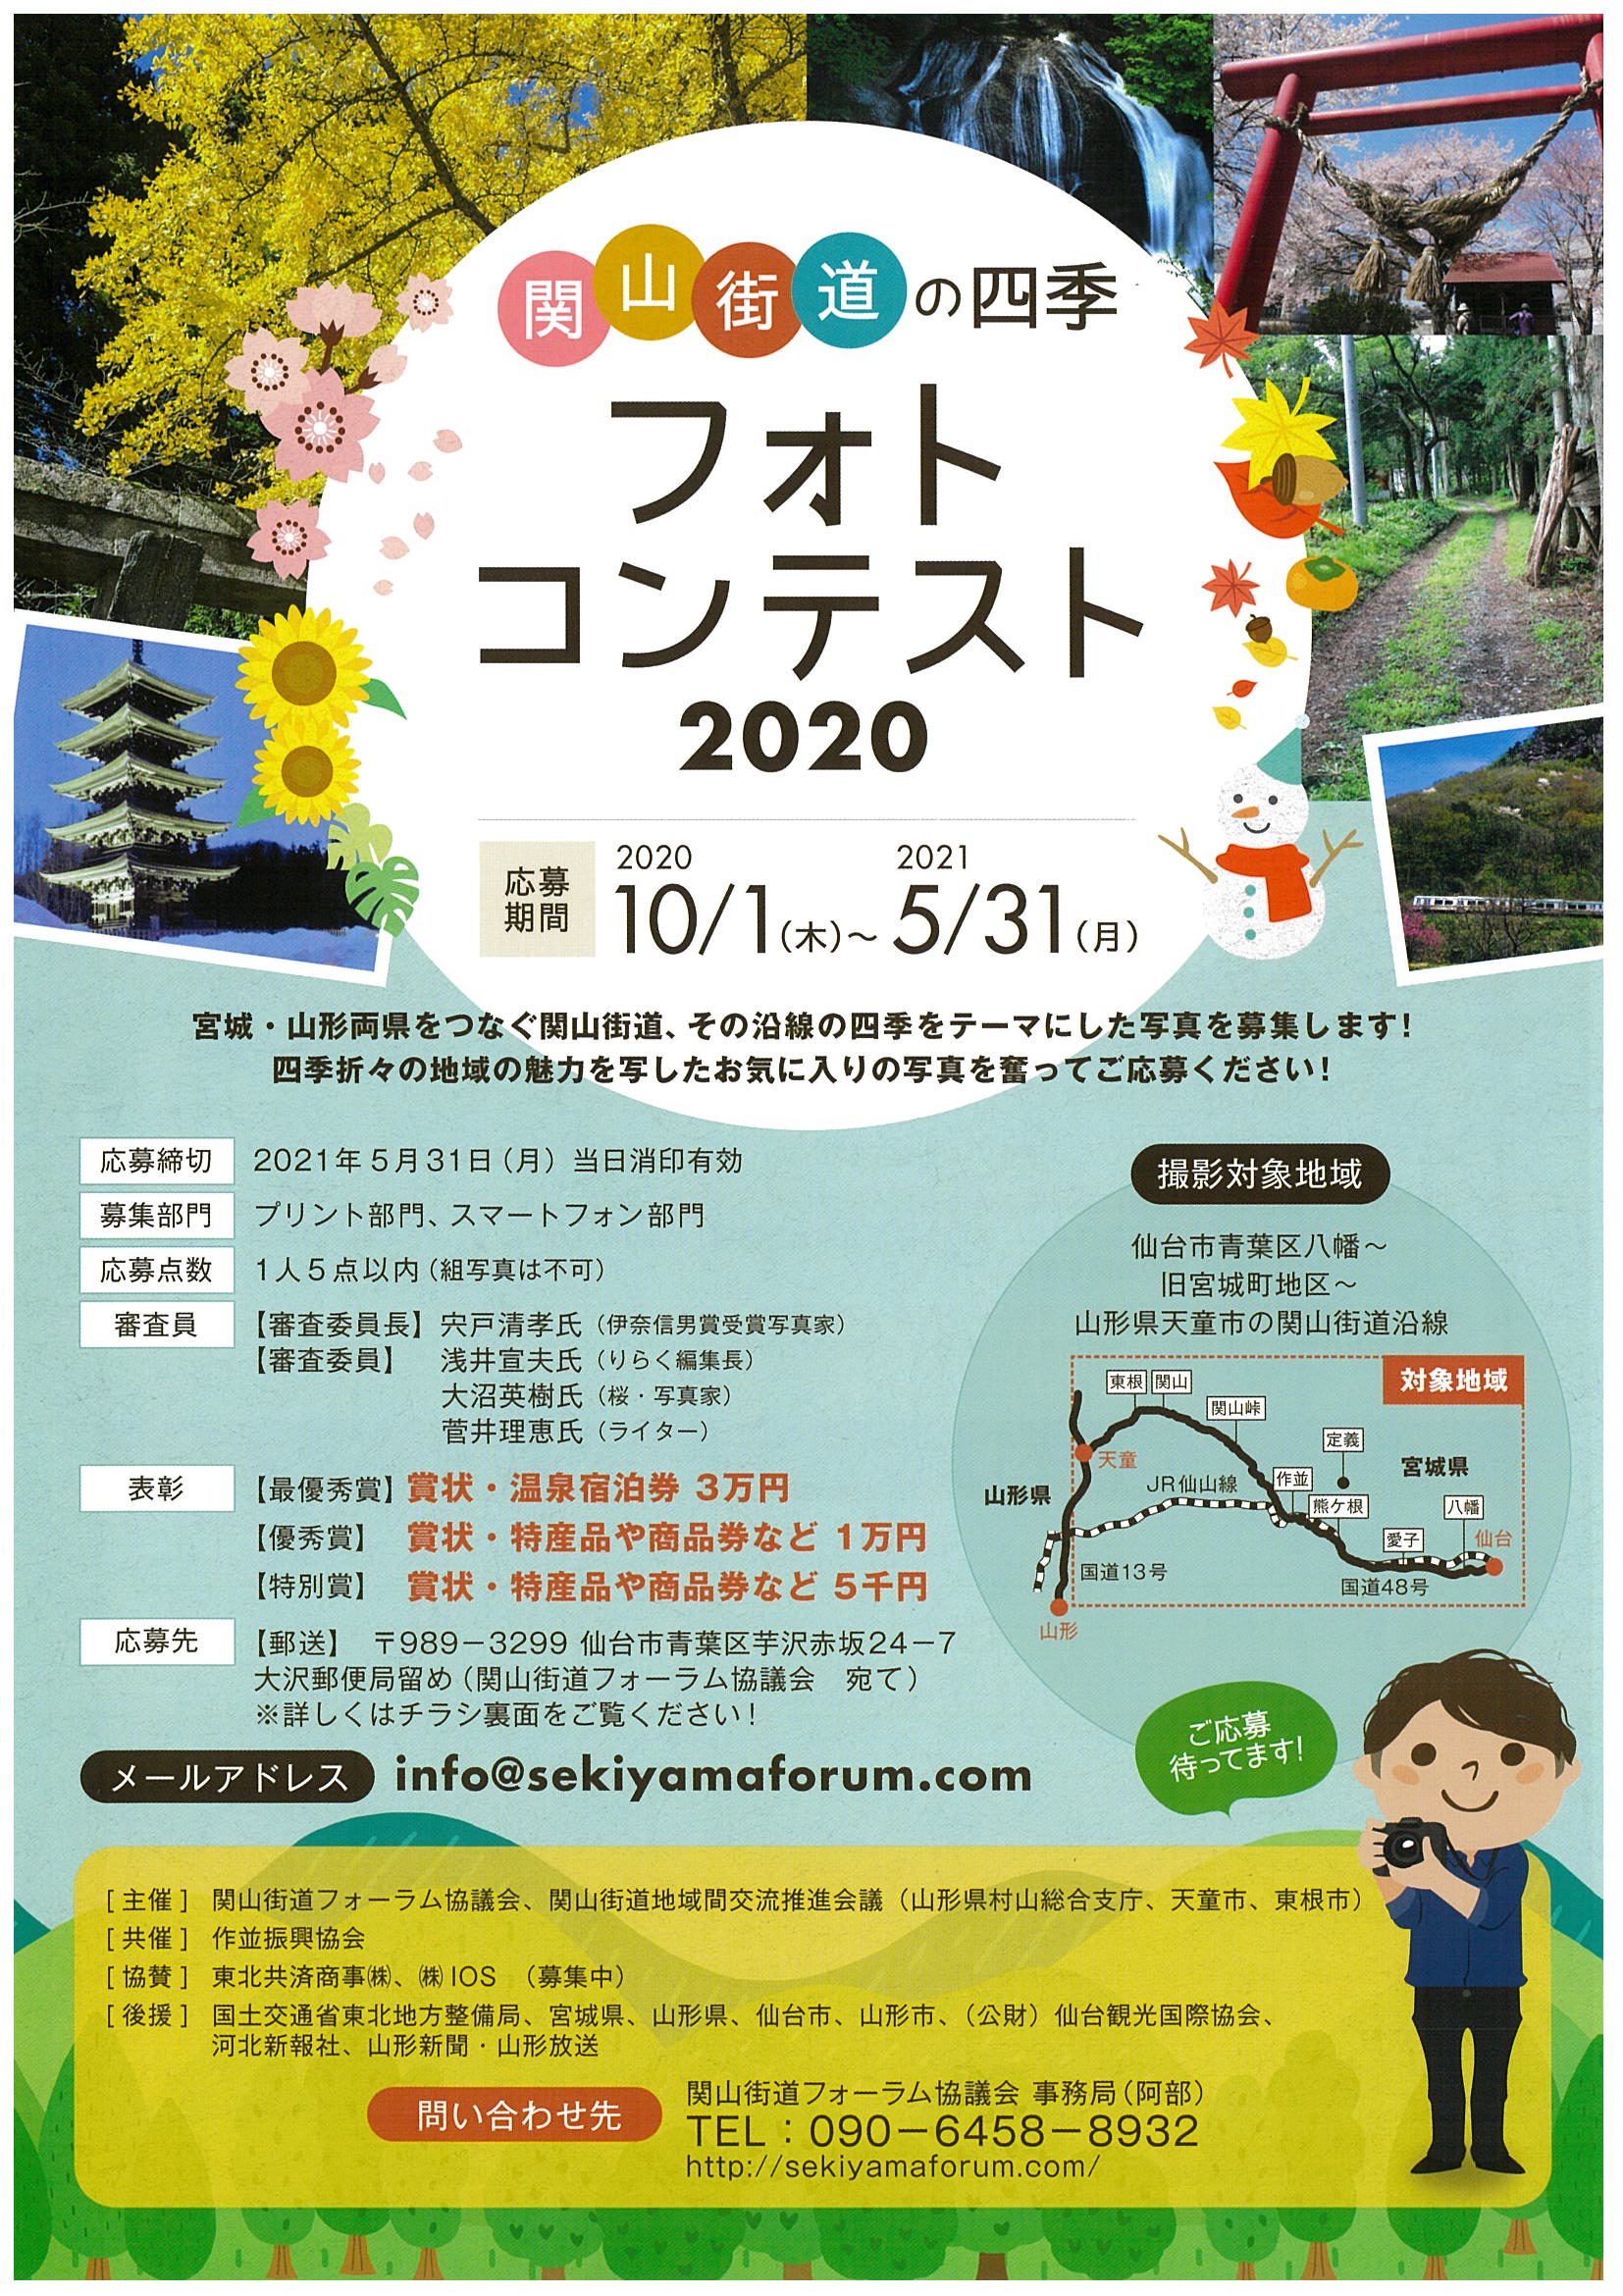 2020関山街道の四季フォトコンテスト審査結果発表